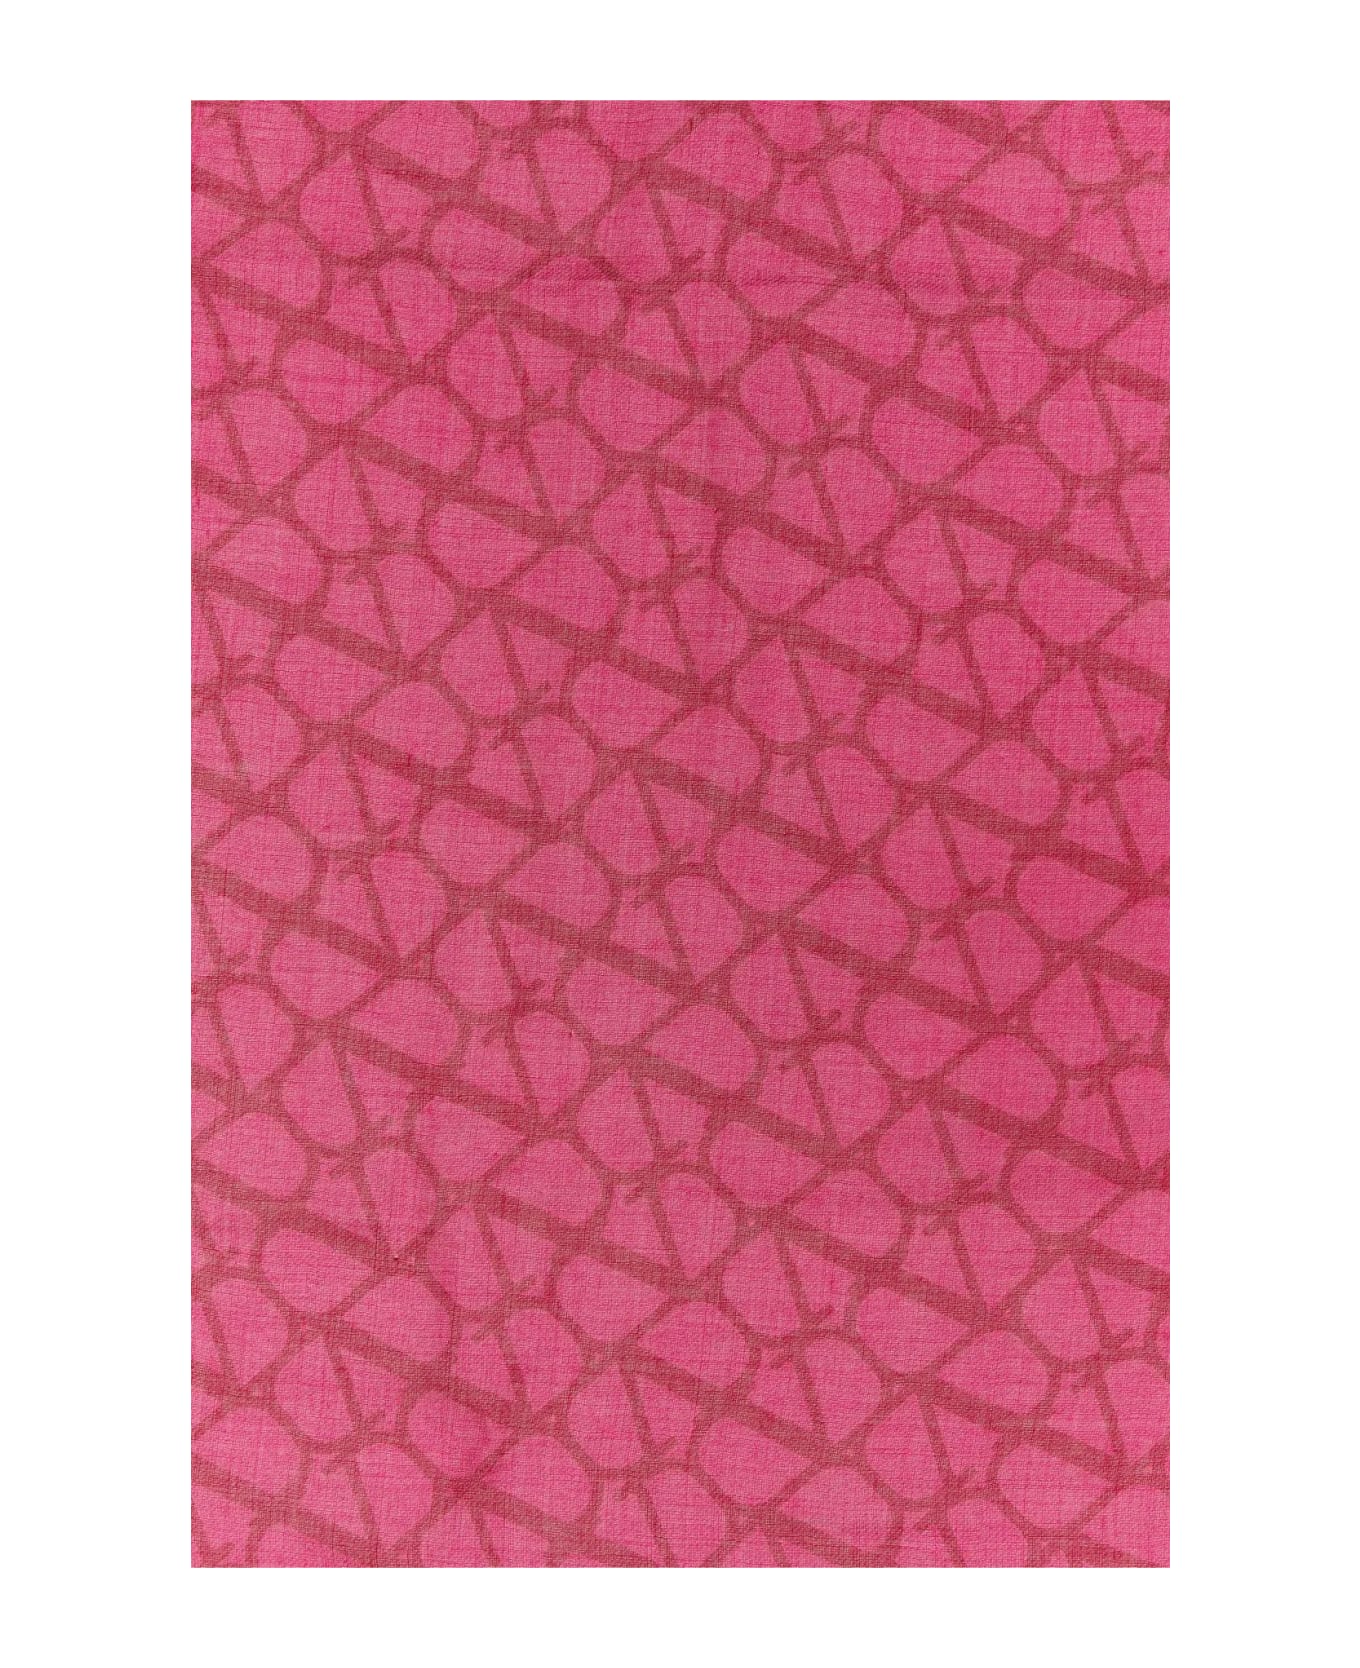 Valentino Garavani Embroidered Cashmere Blend Scarf - Pink pp スカーフ＆ストール